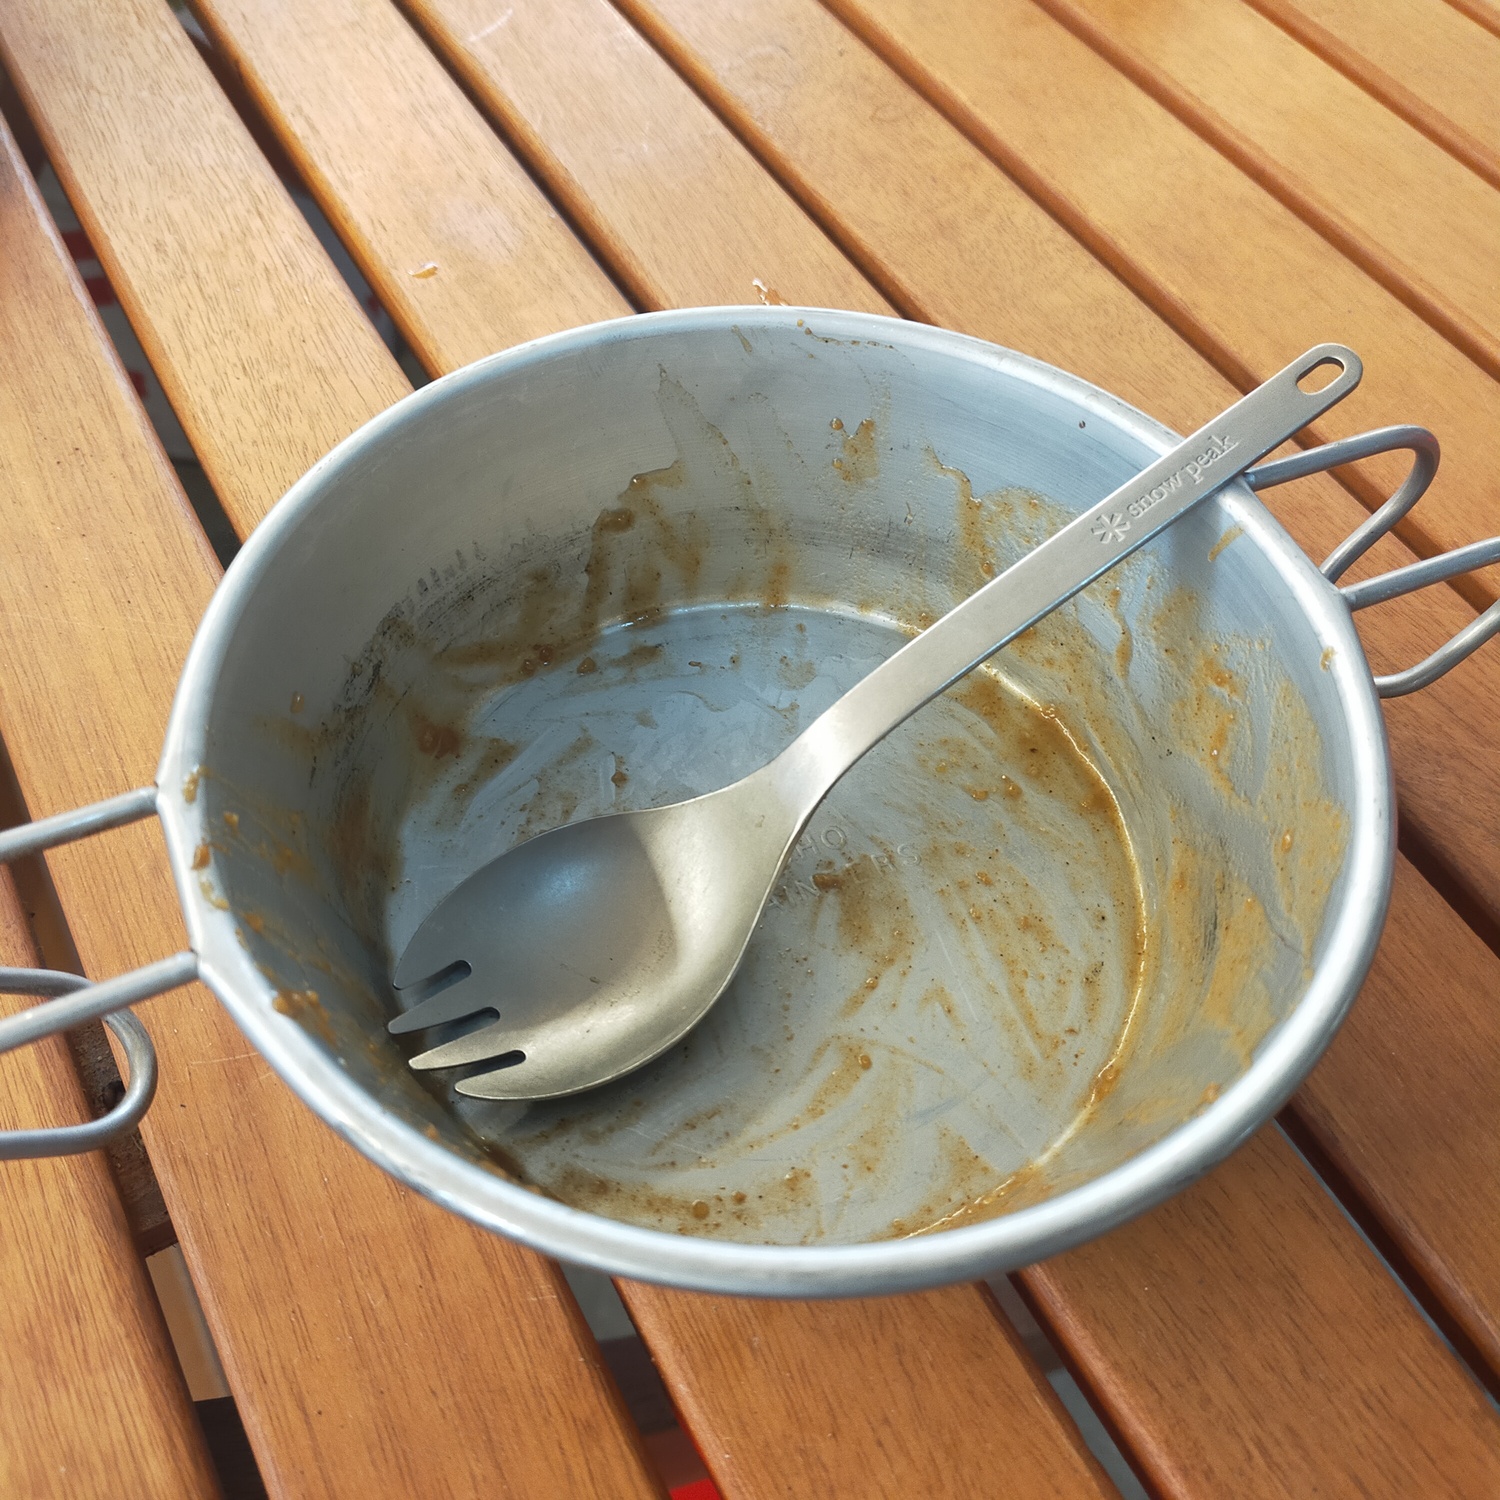 カレーを食べた後の汚れた皿とスプーンがある